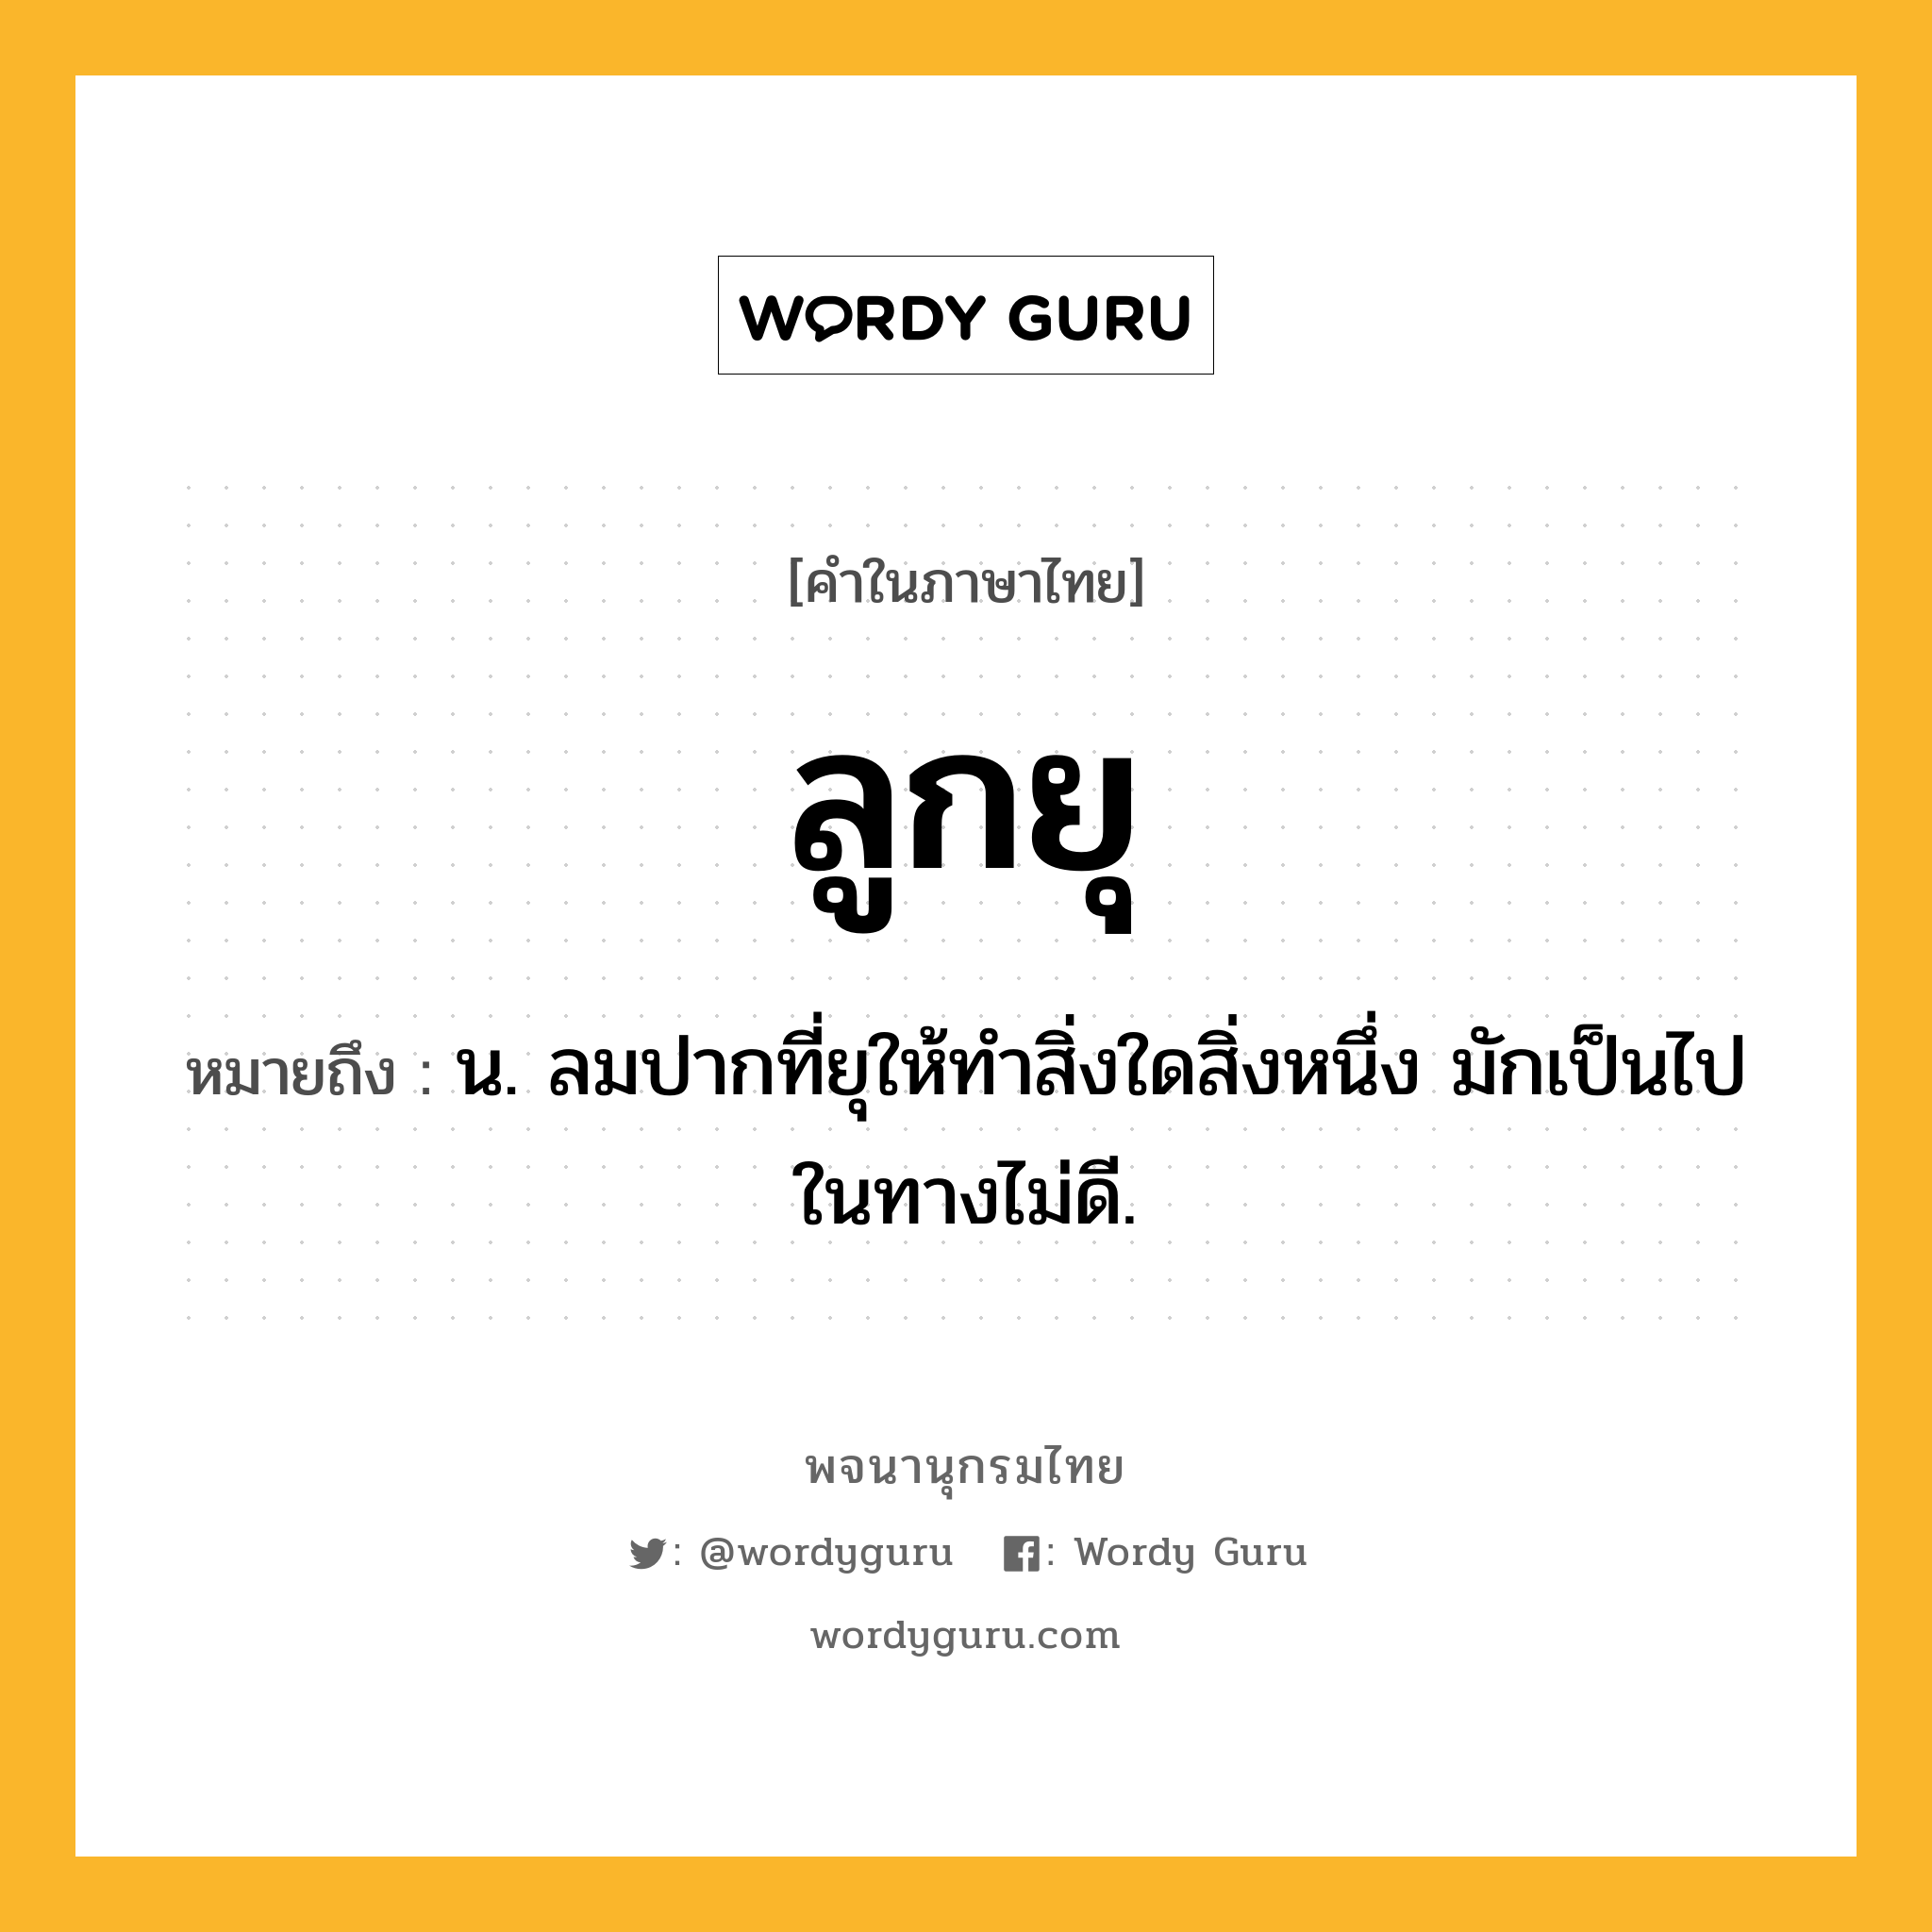 ลูกยุ ความหมาย หมายถึงอะไร?, คำในภาษาไทย ลูกยุ หมายถึง น. ลมปากที่ยุให้ทำสิ่งใดสิ่งหนึ่ง มักเป็นไปในทางไม่ดี.